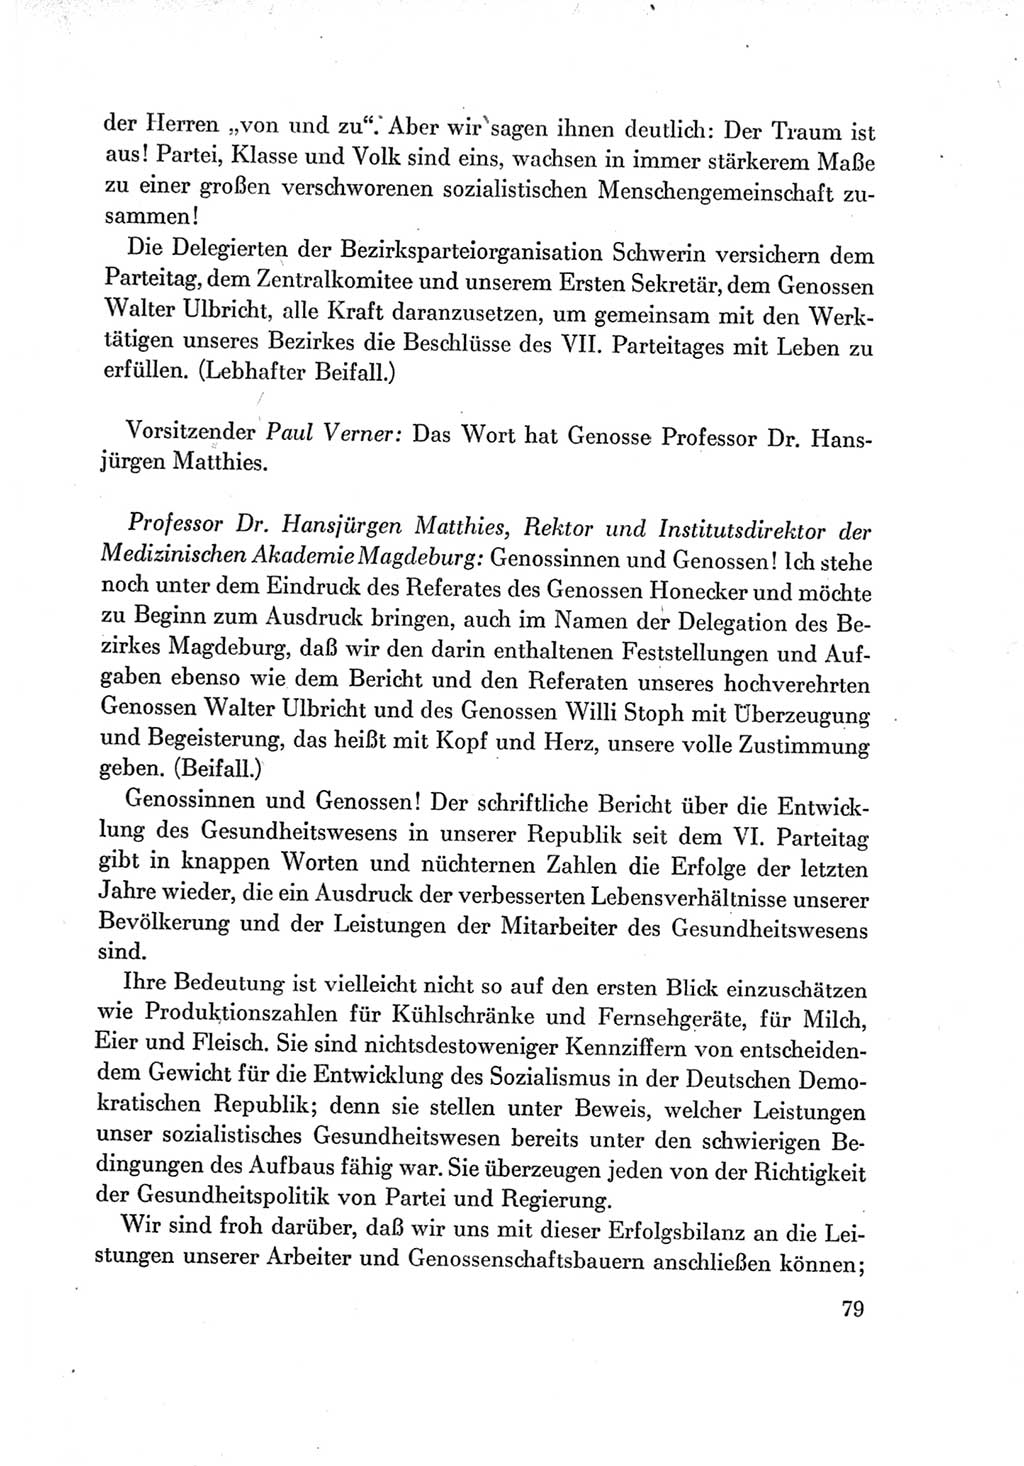 Protokoll der Verhandlungen des Ⅶ. Parteitages der Sozialistischen Einheitspartei Deutschlands (SED) [Deutsche Demokratische Republik (DDR)] 1967, Band Ⅱ, Seite 79 (Prot. Verh. Ⅶ. PT SED DDR 1967, Bd. Ⅱ, S. 79)